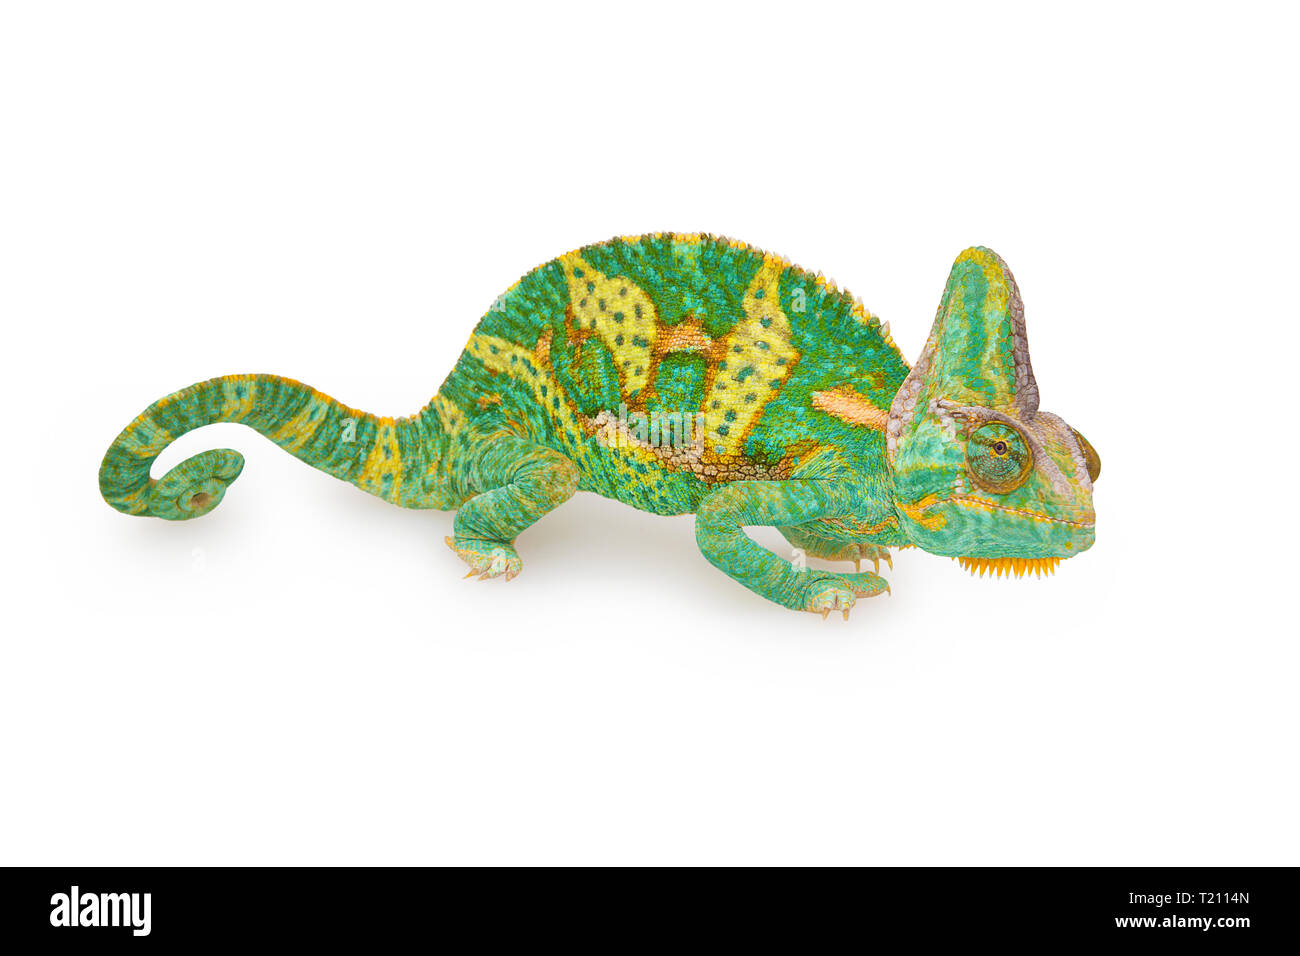 Chiudere la vista di un bel verde colorato chamaeleo calyptratus con la sua coda a spirale. Specie chiamato anche velato, cono-testa o yemen chameleon. Foto Stock